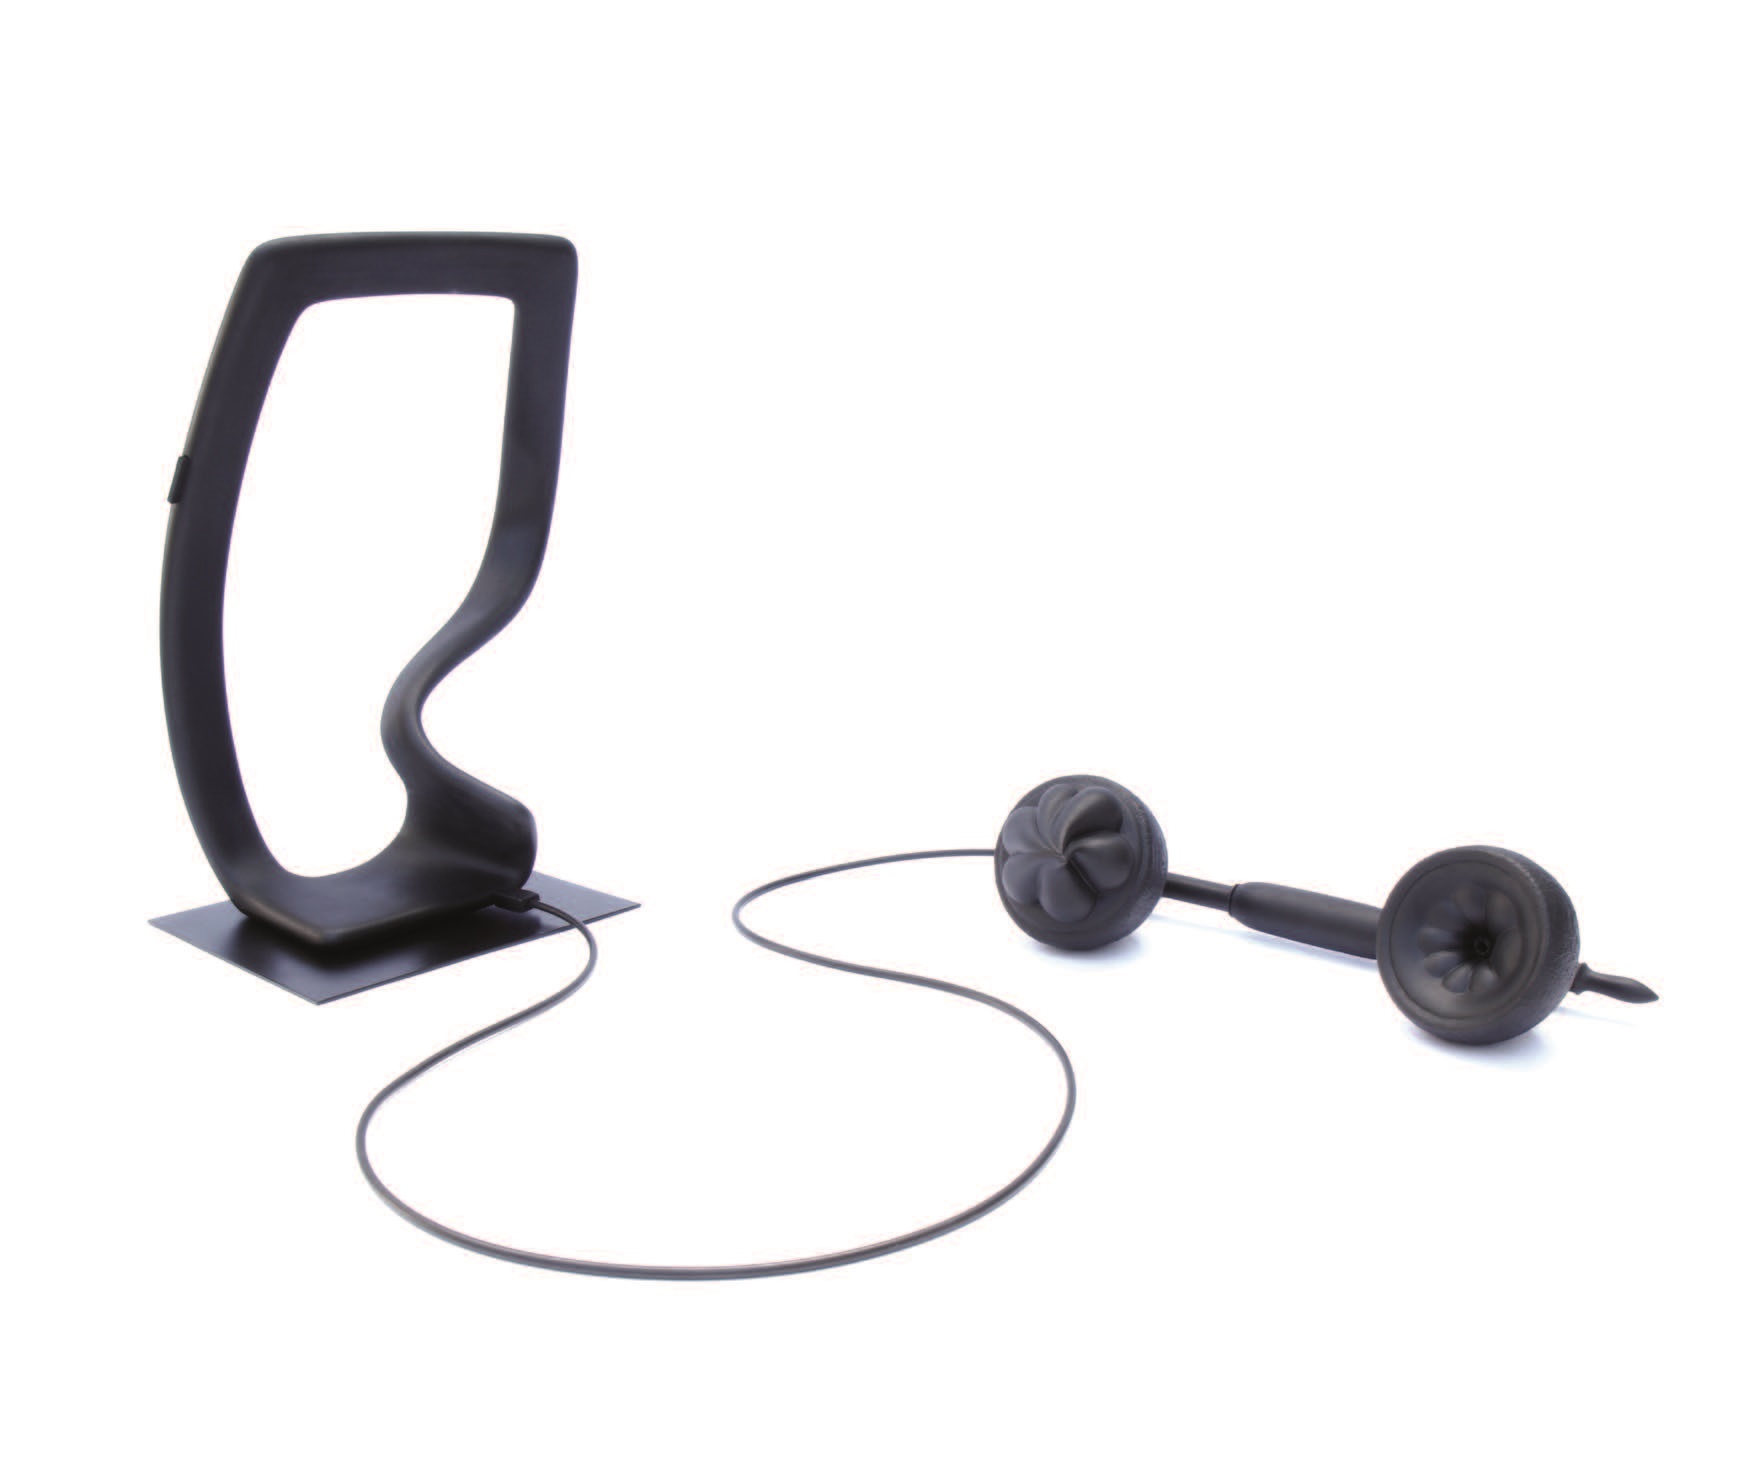 Ein schwarzer Rahmen mit abgerundeten Ecken, der im unteren Drittel der rechten Seite eingedellt ist undvon dessen Unterseite ein Kabel zu einem altmodisch geformten Telefonhörer führtnem 